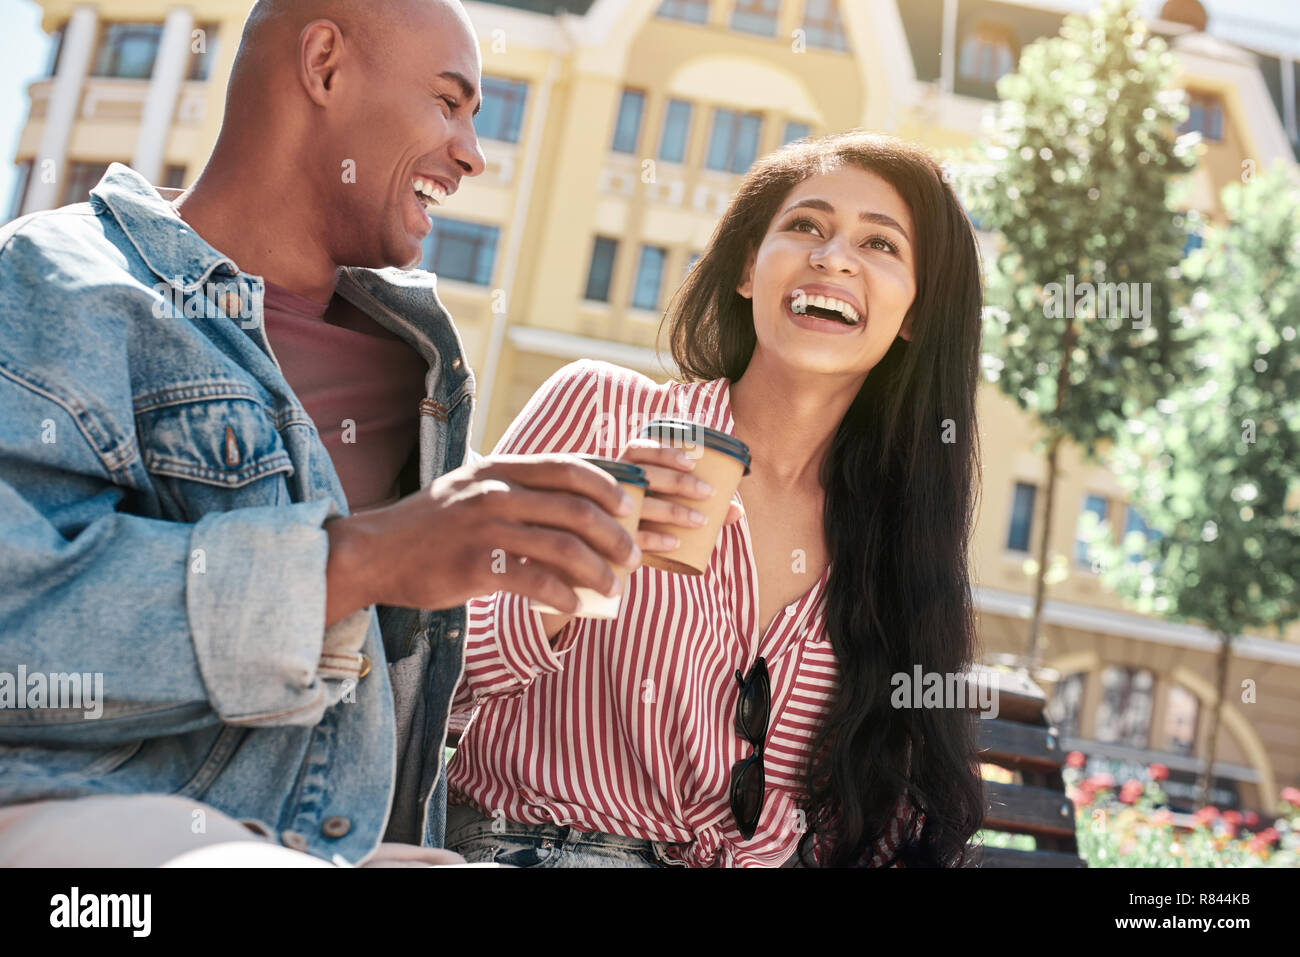 Romantische Beziehung. Junge diverse Paar sitzt auf der Bank auf die Stadt Straße holding Tassen trinken heißen Kaffee reden lachen Heiter close-up Stockfoto